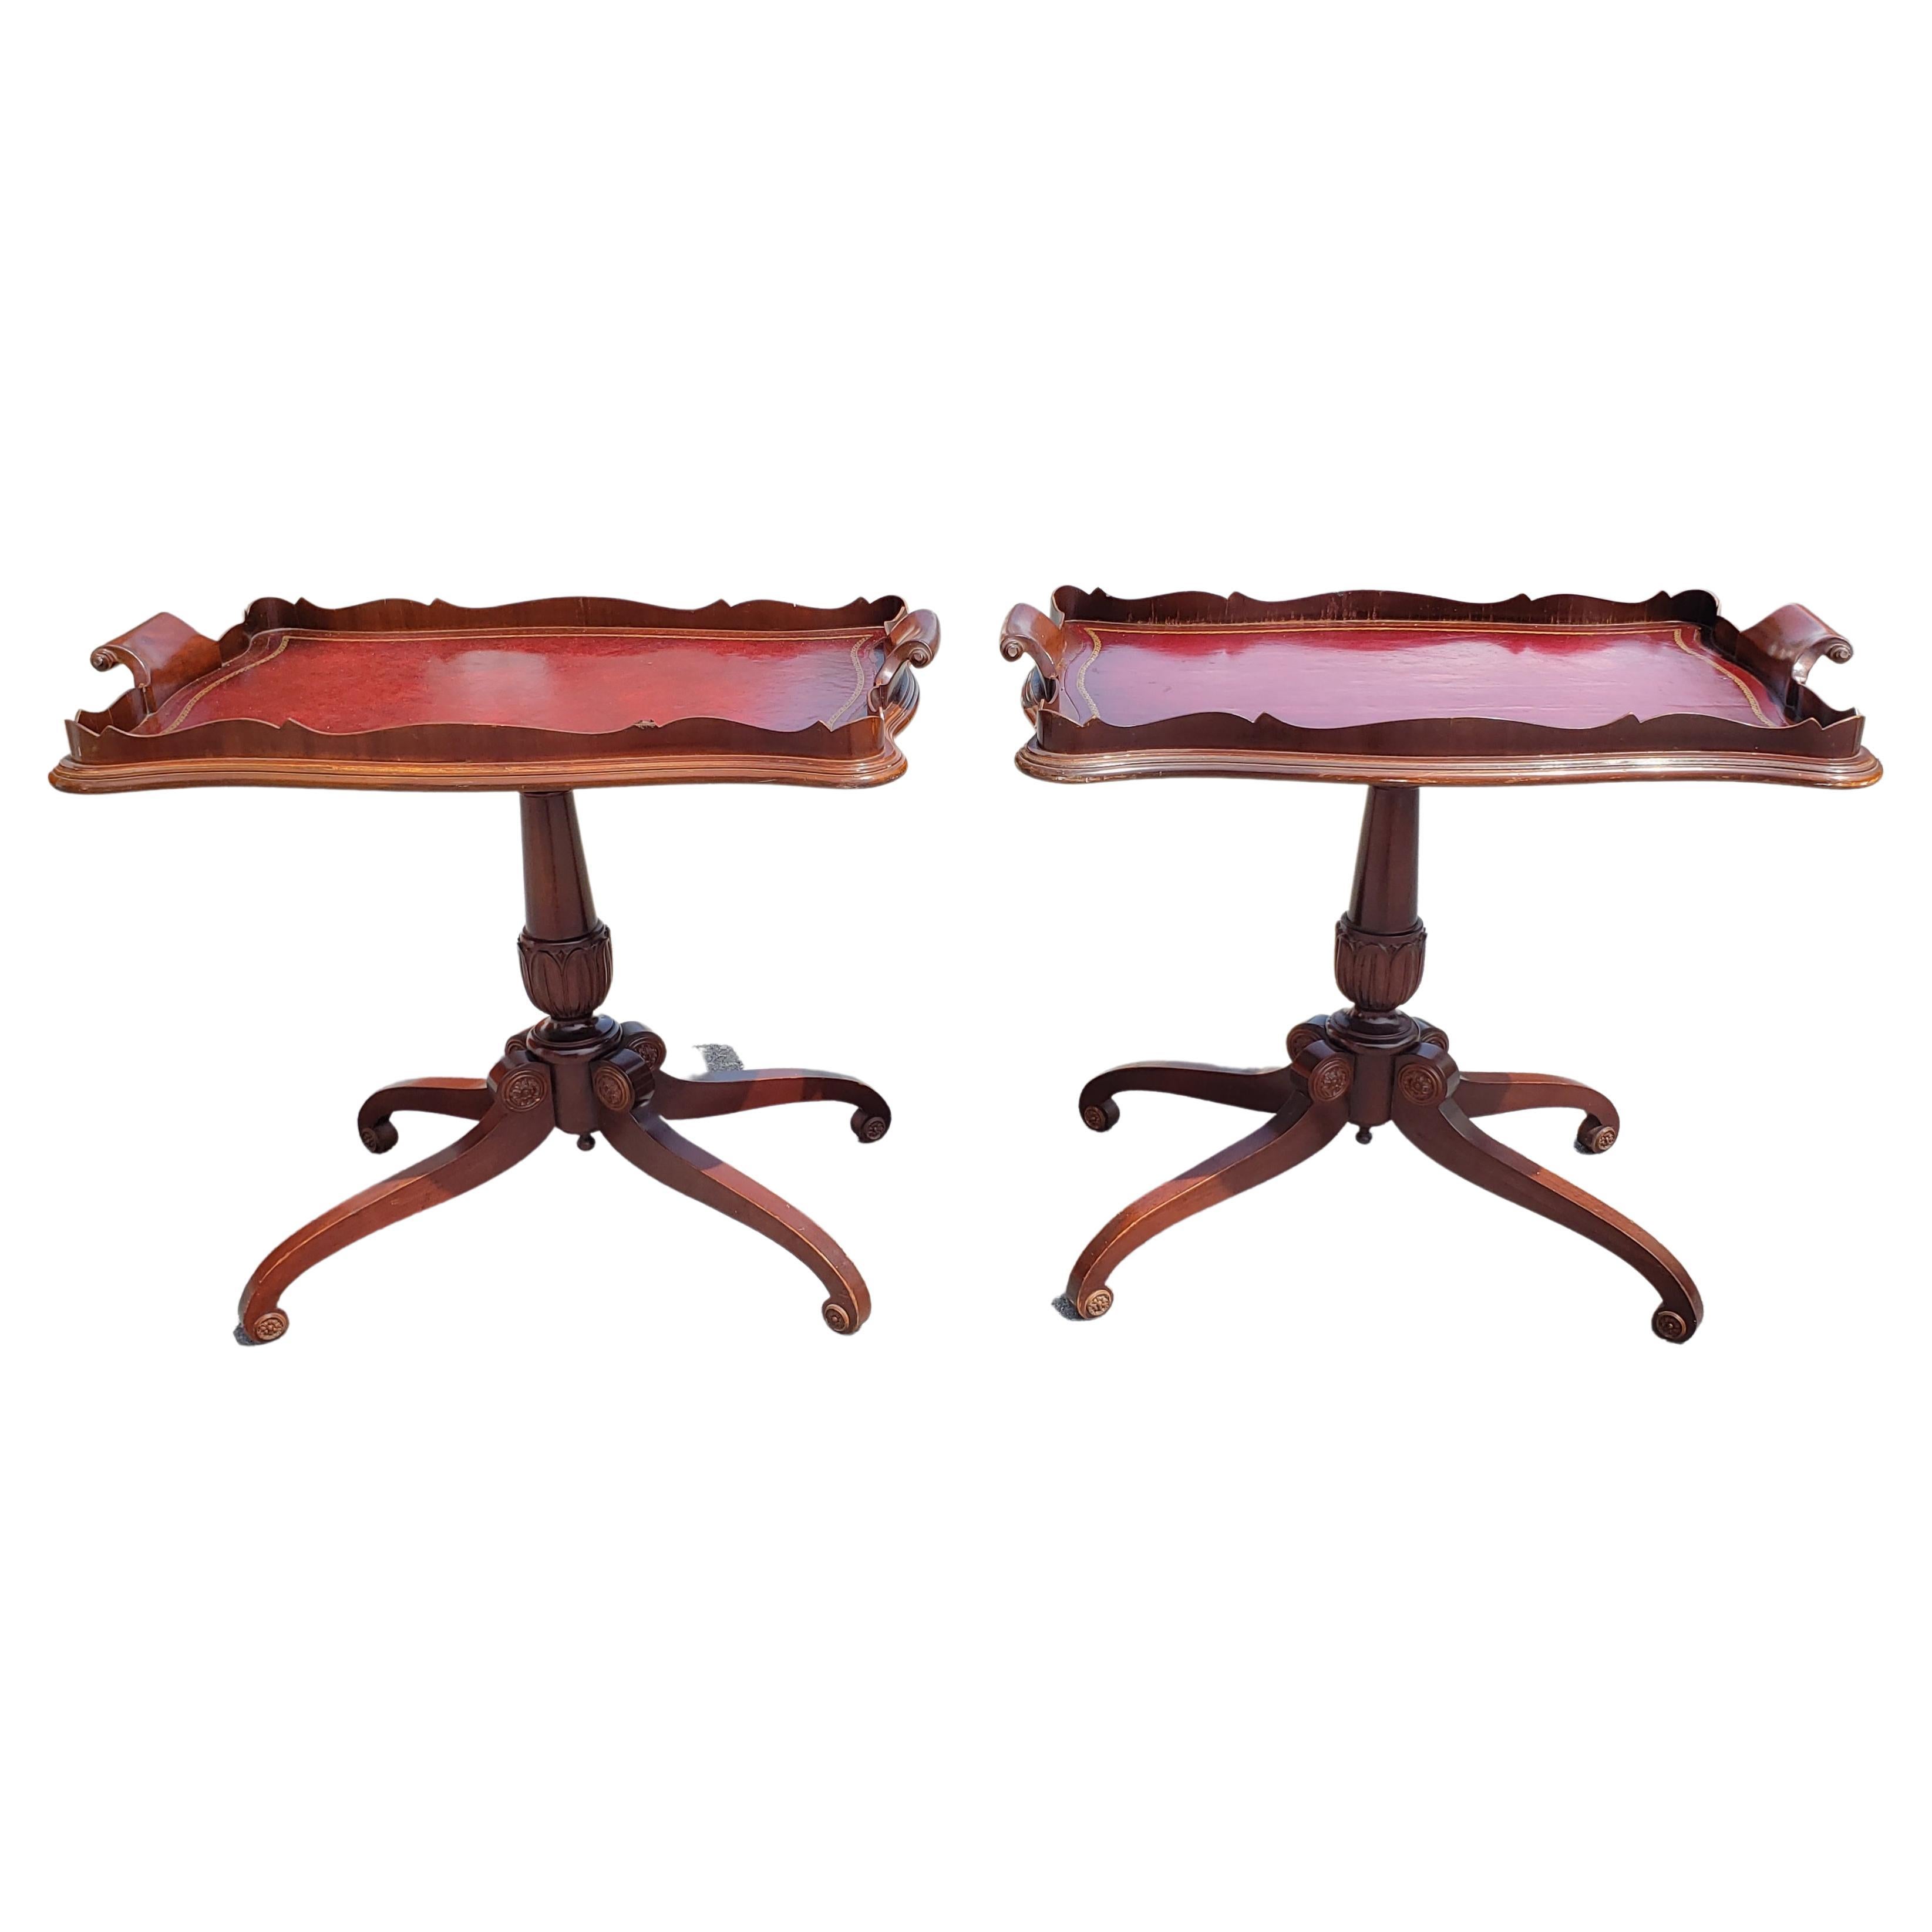 Französisch Regency Mahagoni Quad Feet Pedestal schablonierte Lederplatte Tablett Tisch oder Teetisch in gutem Vintage-Zustand.
Maße: 33,5